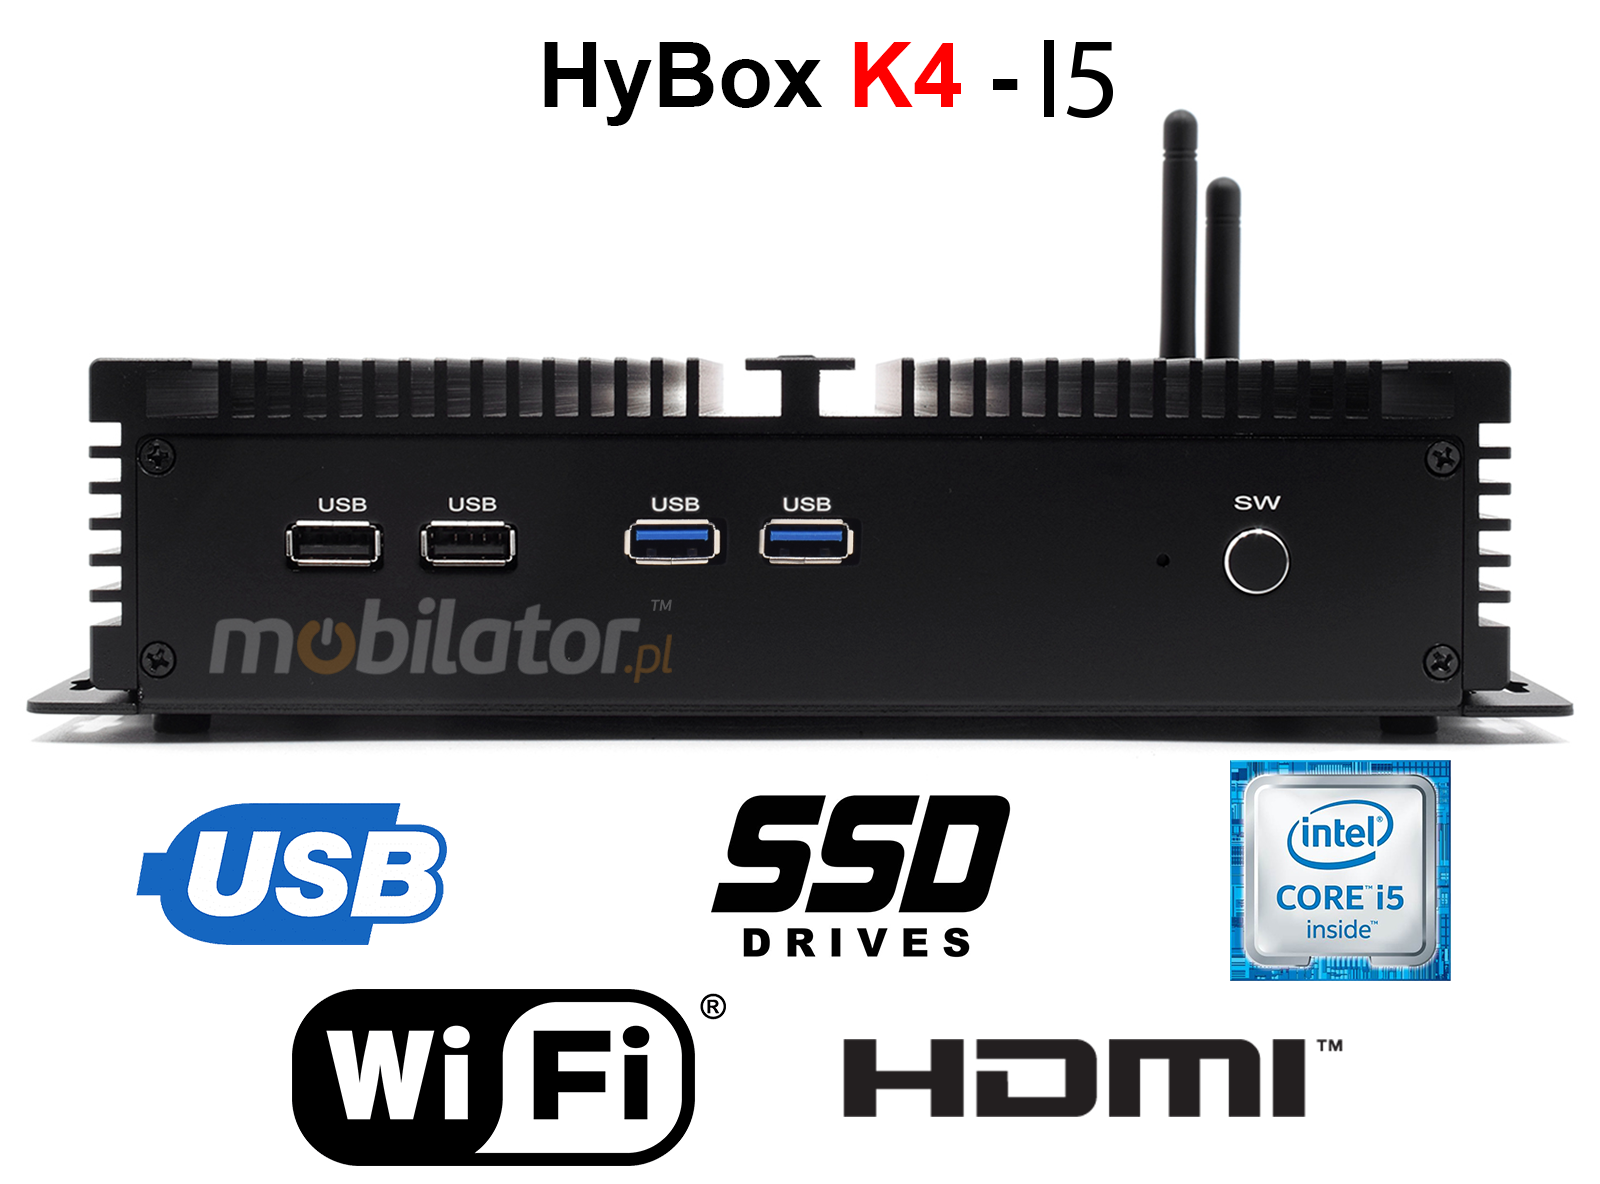 HyBOX K4 Szybki komputer przemysłowy z wydajnym procesorem i dyskiem SSD w metalowej obudowie przystosowany do pracy na hurtowni